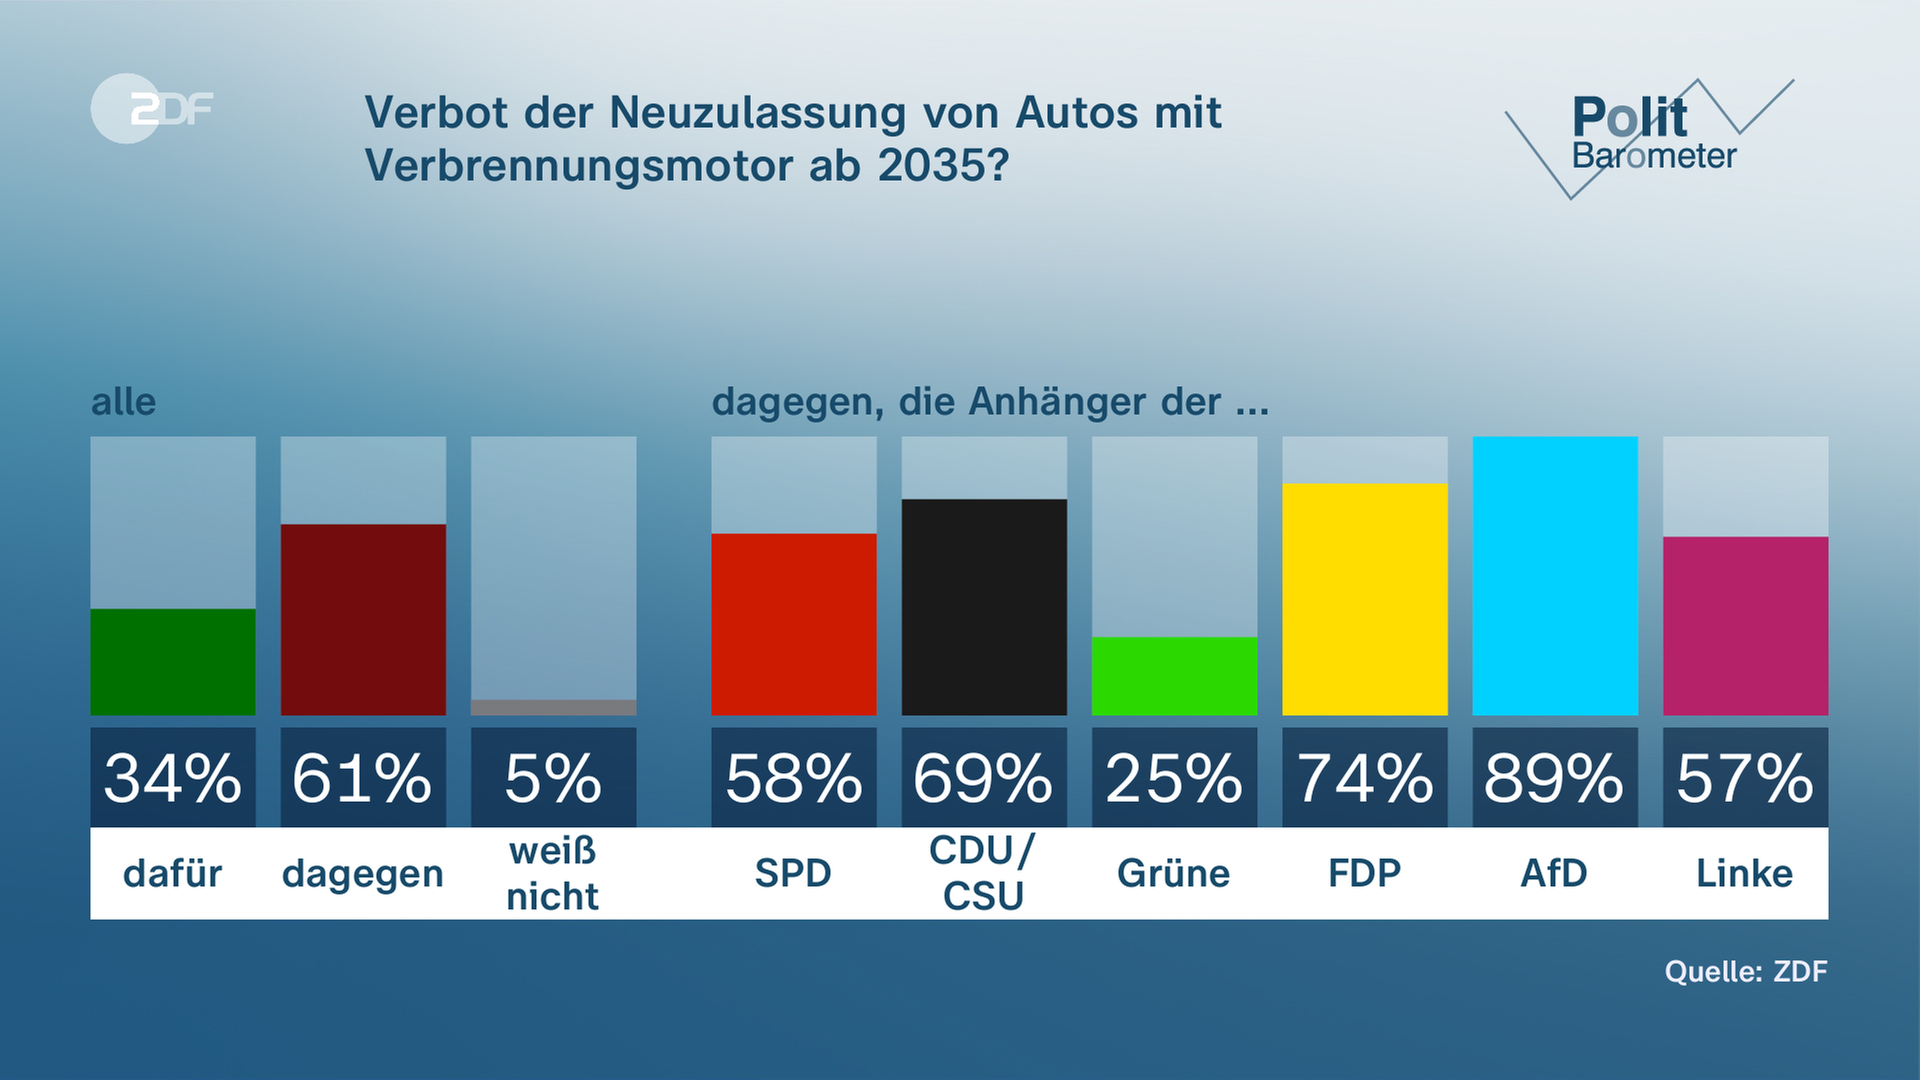 Politbarometer vom 17.03.2023, "Verbot der Neuzulassung von Autos mit Verbrennungsmotor ab 2035?"